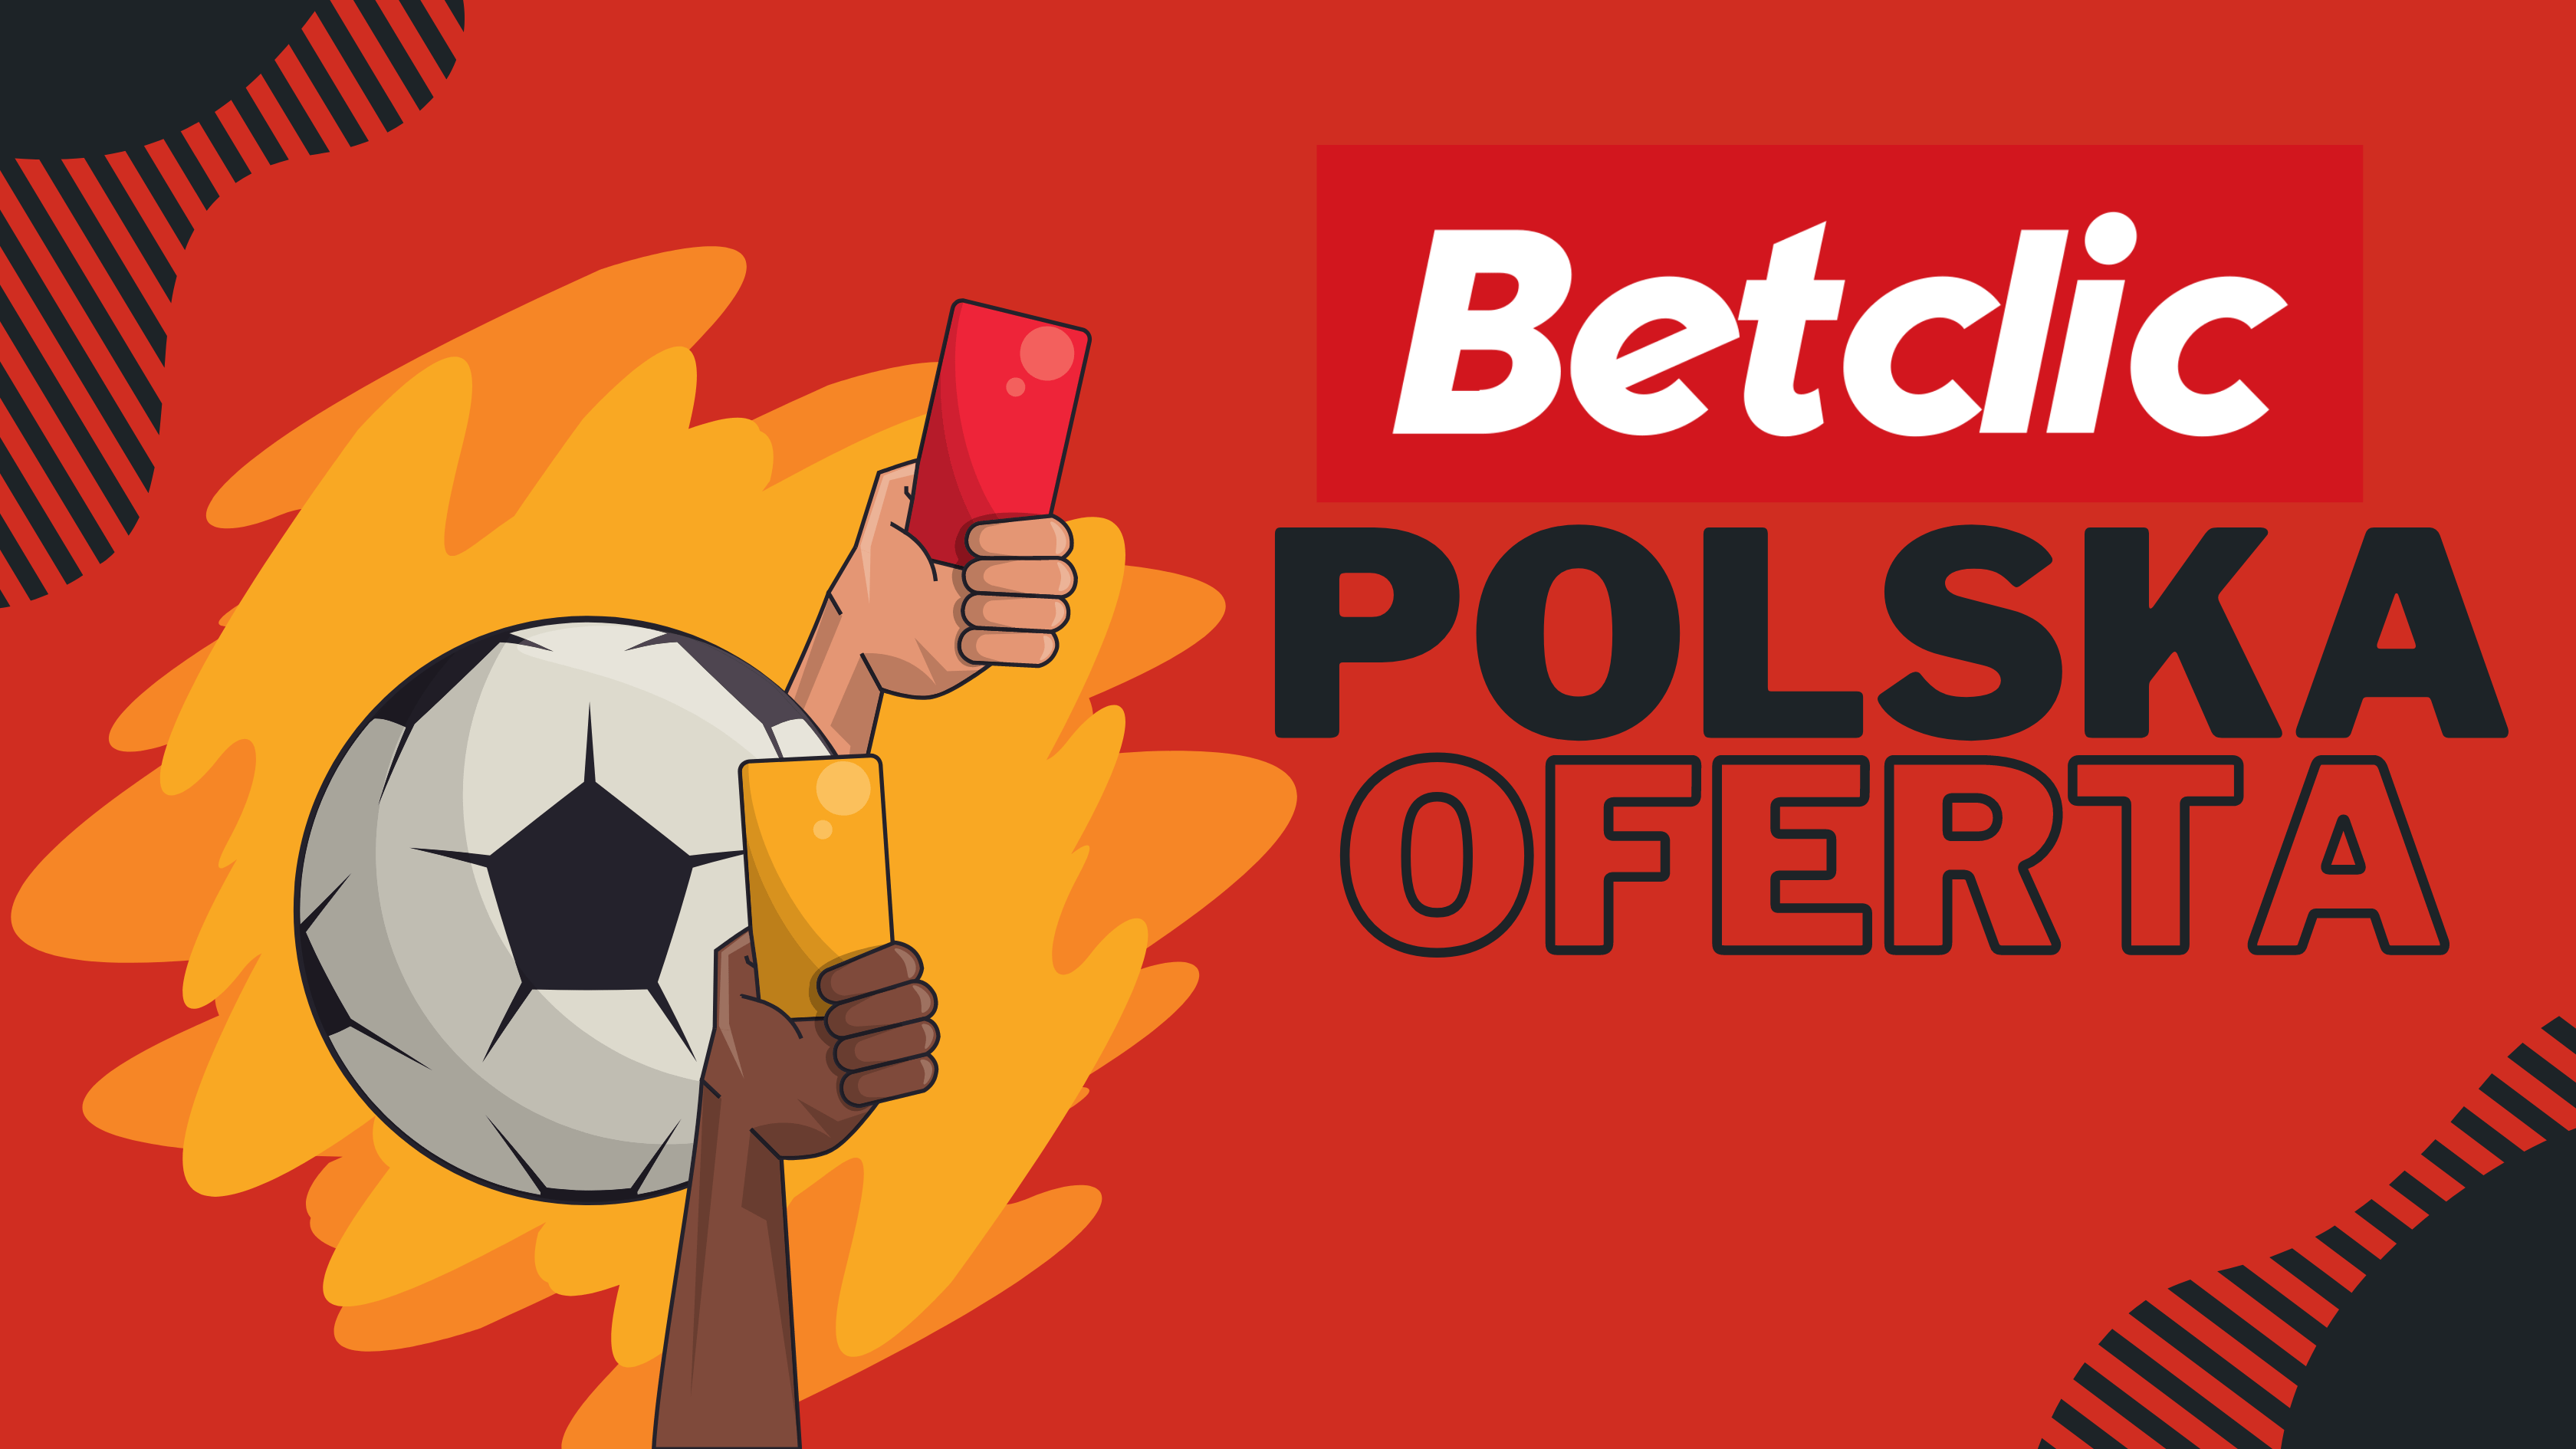 Polski bukmacher Betclic oferta sportowa dla graczy